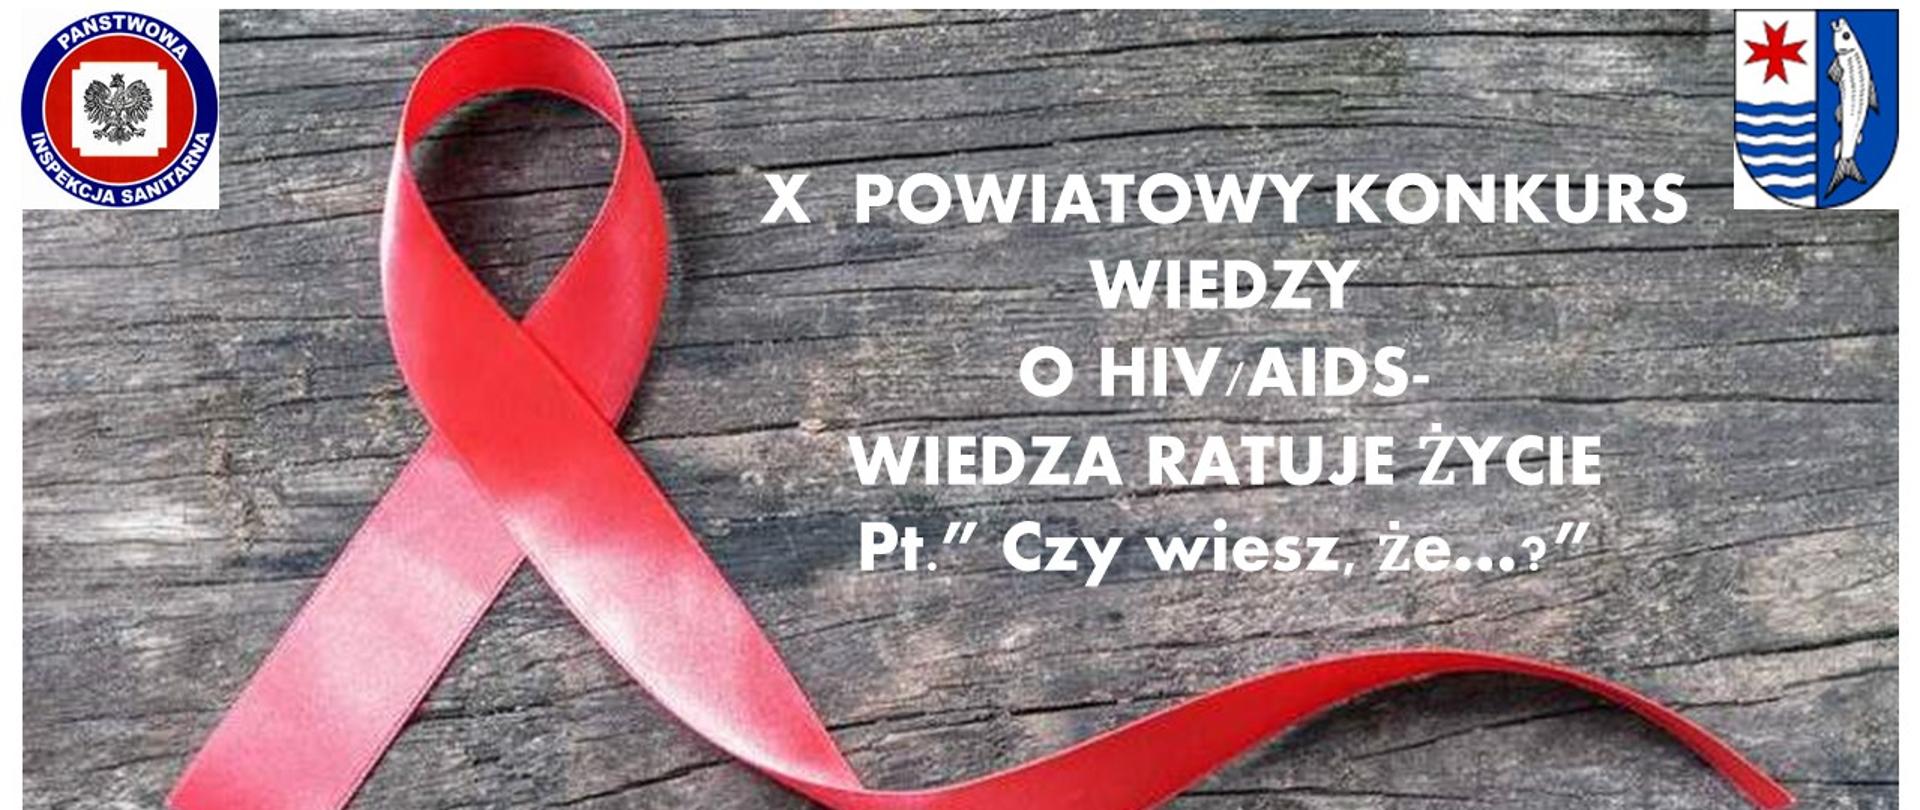 X Powiatowy Konkurs Wiedzy o HIV/AIDS Wiedza Ratuje Życie pt. „Czy wiesz, że…?”